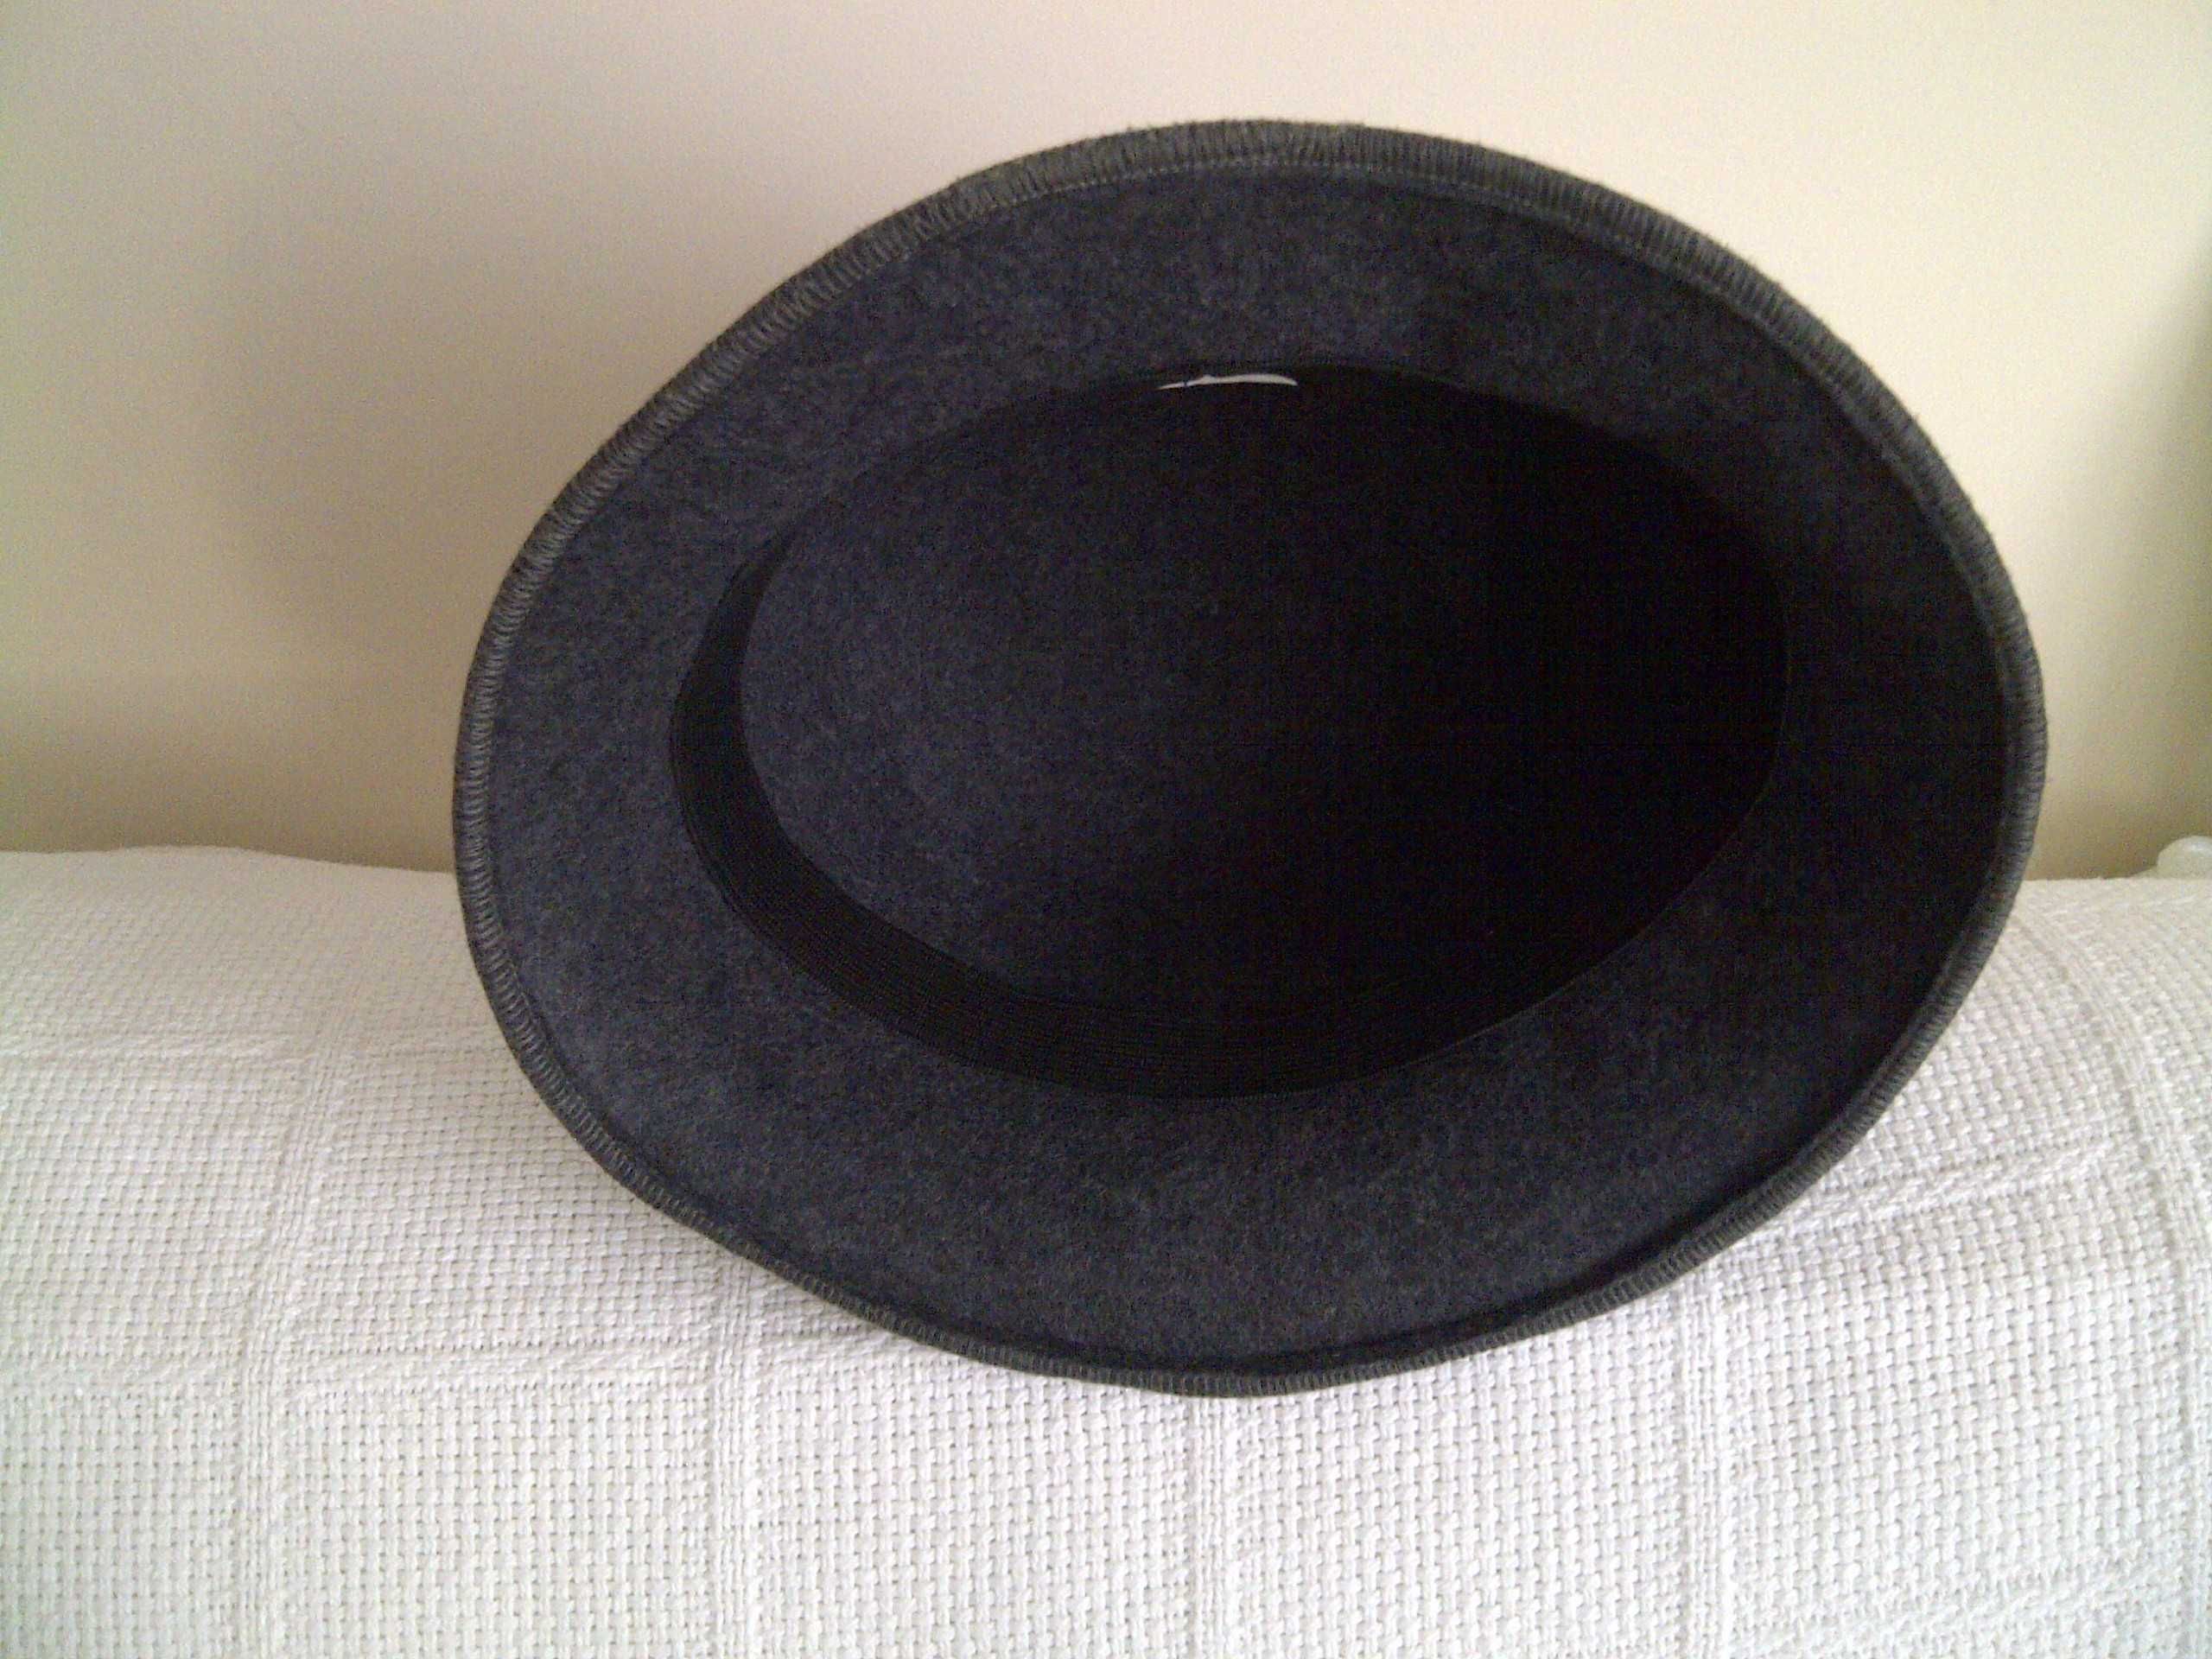 kapelusz stylizowany na lata międzywojenne